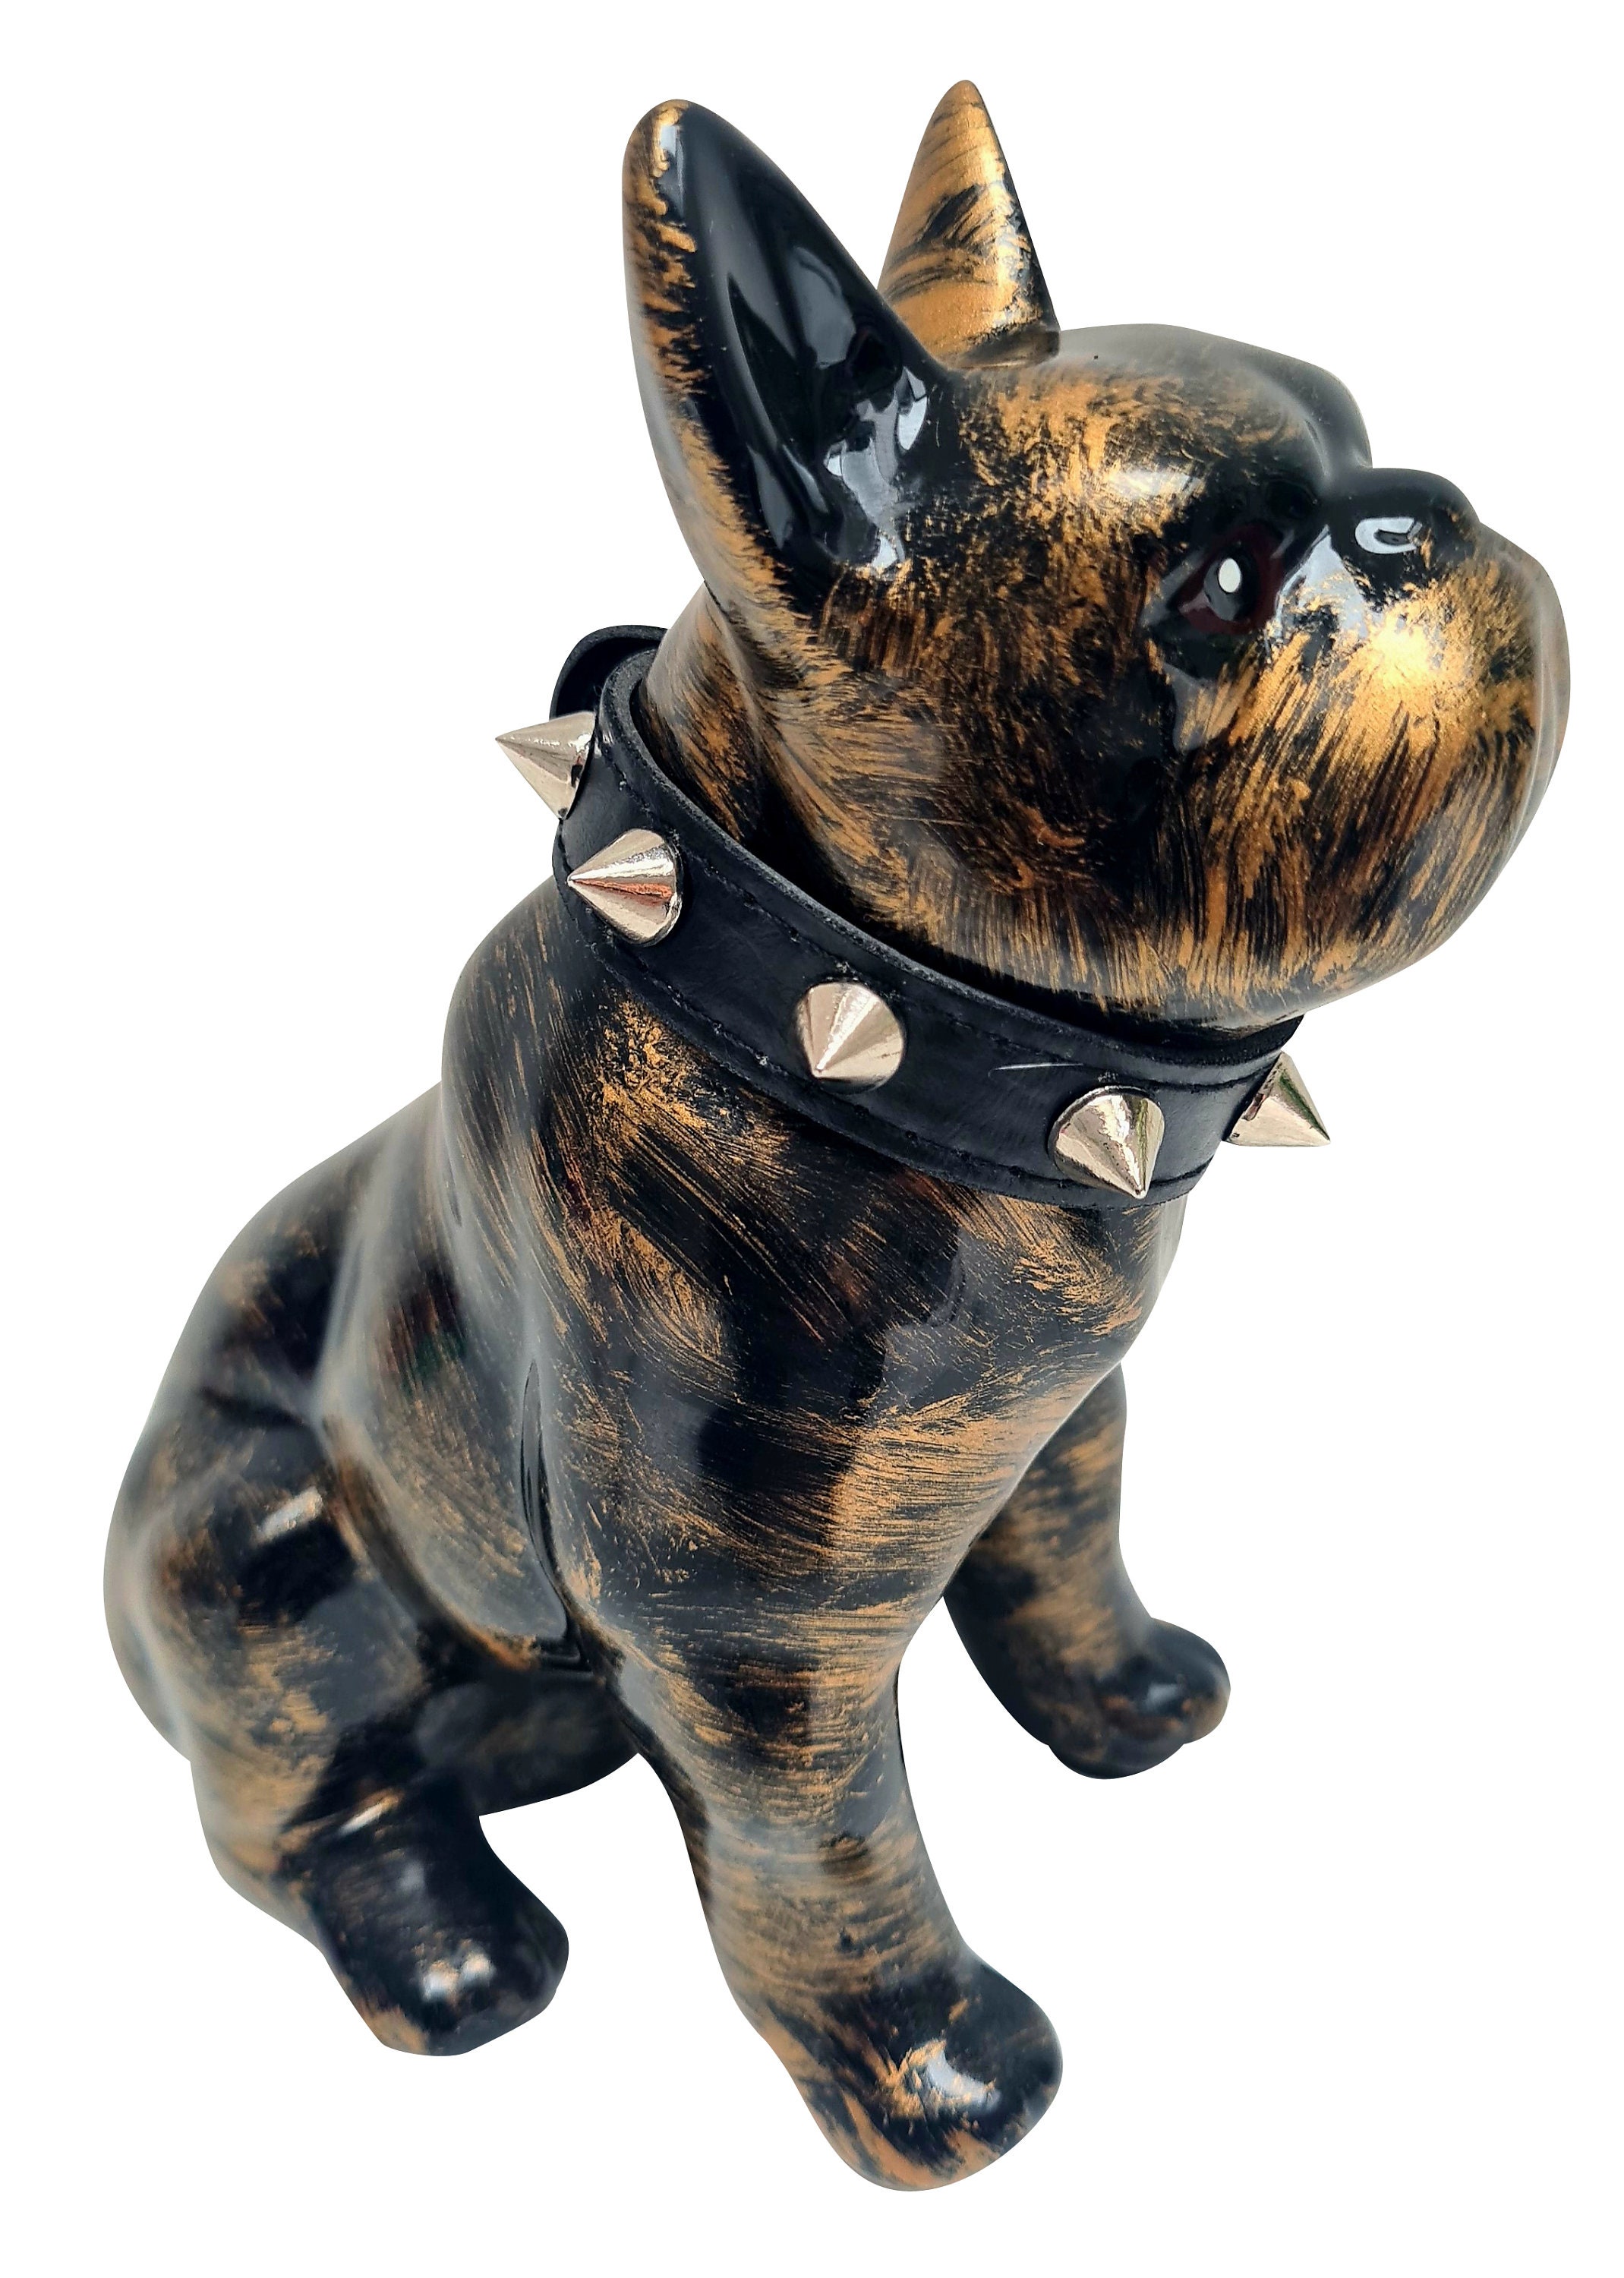 Große französische Bulldoggen-Hundestatue aus Keramik zur Dekoration.  Modell Rika von Laure Terrier. Höhe 30 Zentimeter - .de